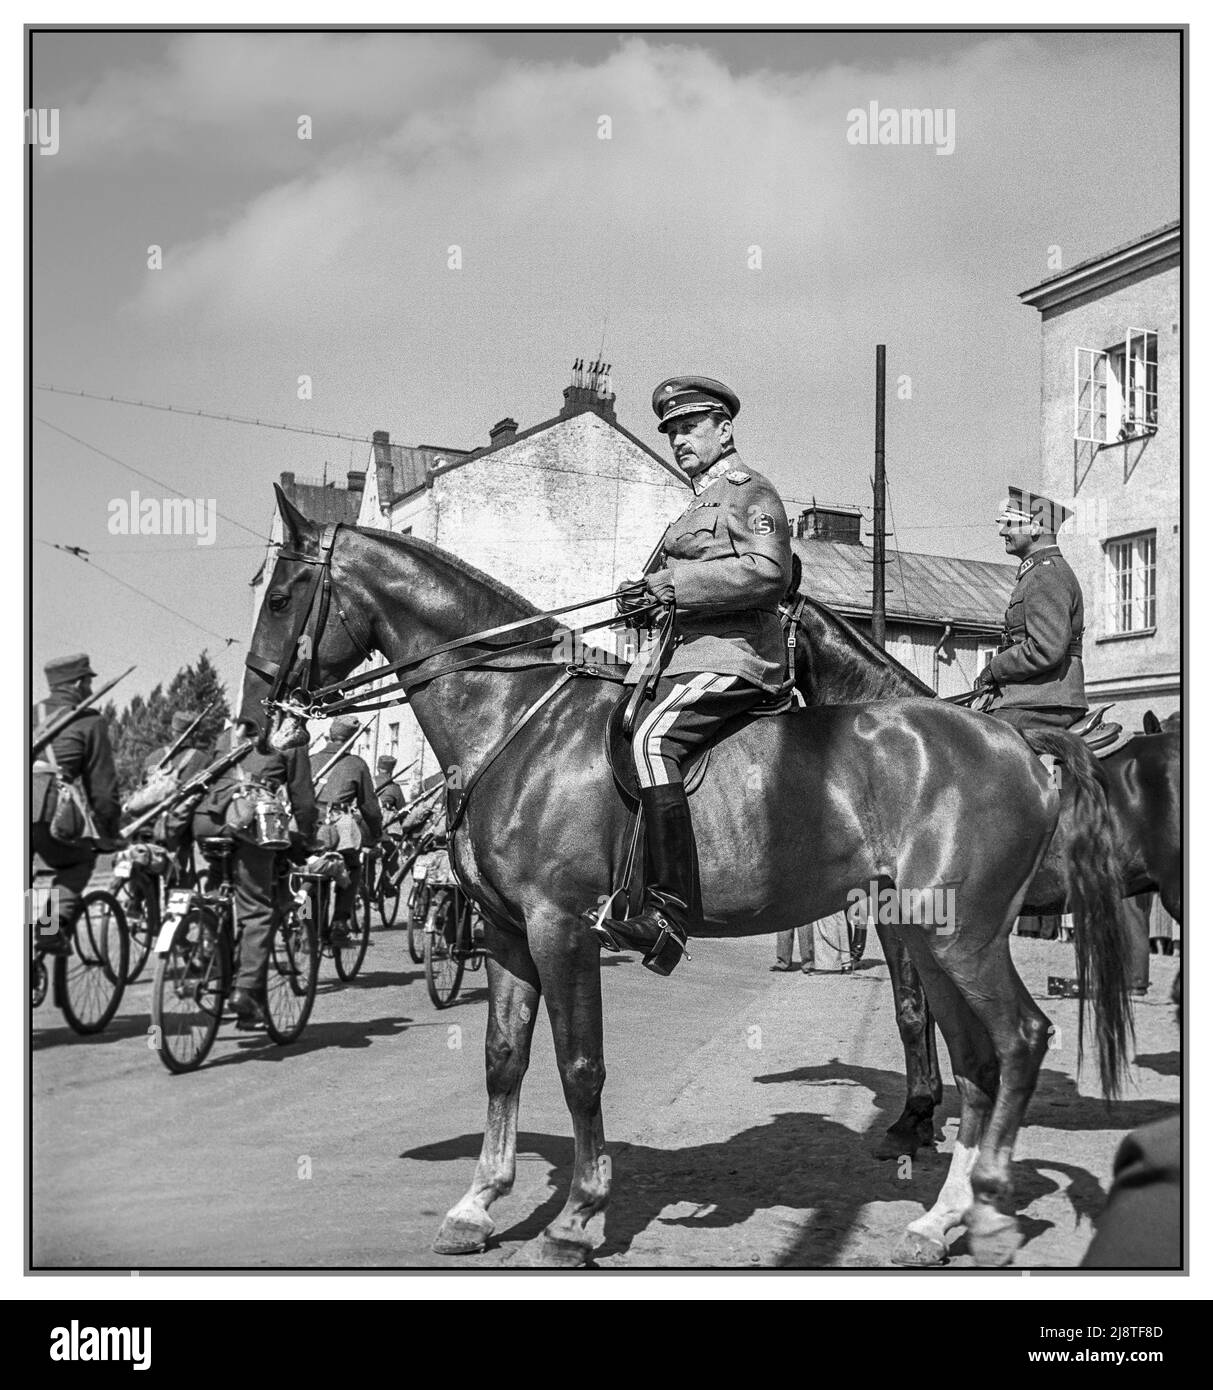 MANNERHEIM WW2 Commandant en chef, le maréchal Carl Gustav Mannerheim sur son cheval de parade examinant les troupes de parades quelques-unes sur des bicyclettes à Viipuri, Finlande 1939. Banque D'Images